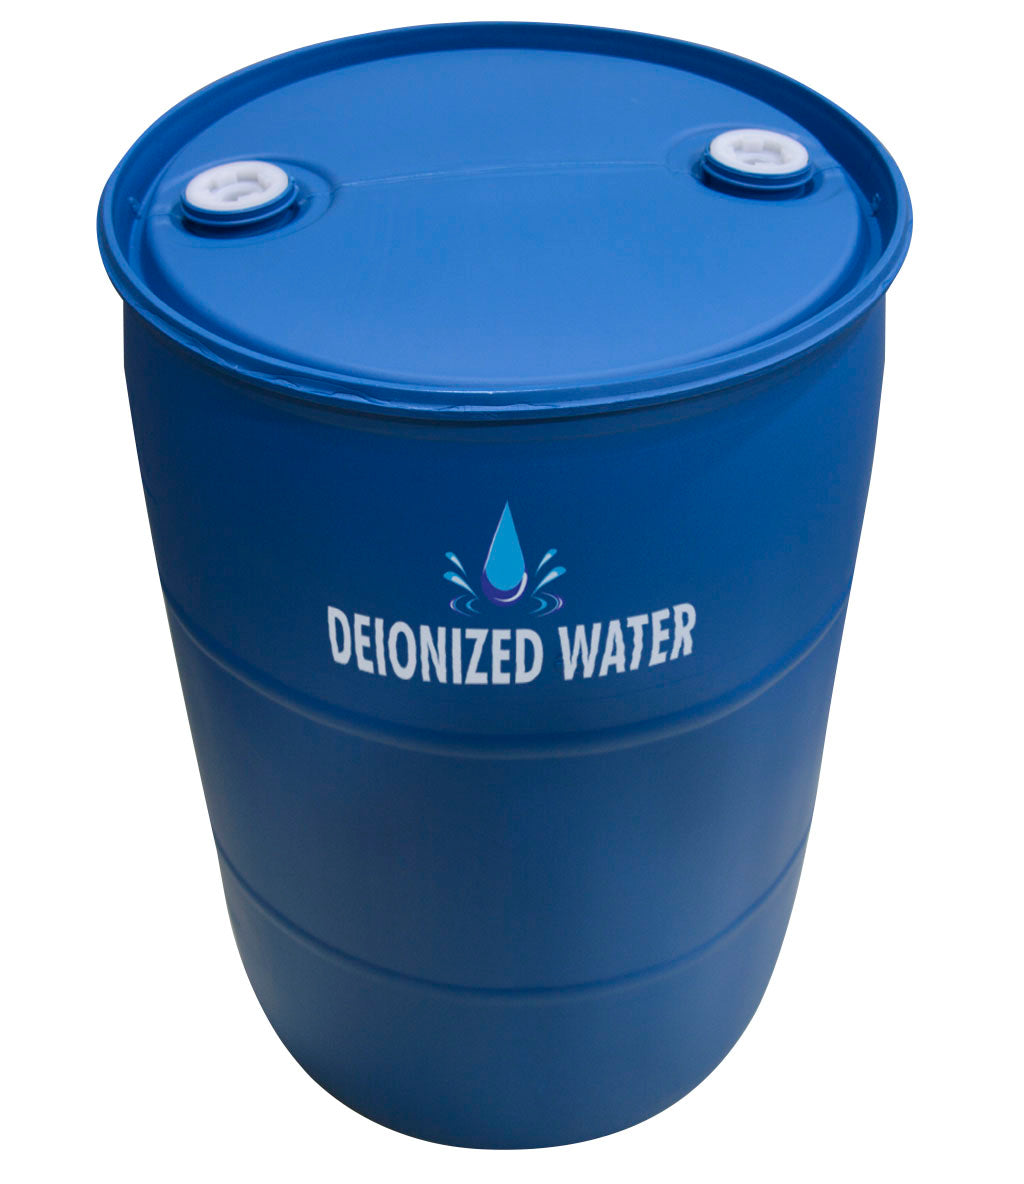 Bulk Deionized Water (DI Water) in 55 Gallon Drum – Go Glycol Pros